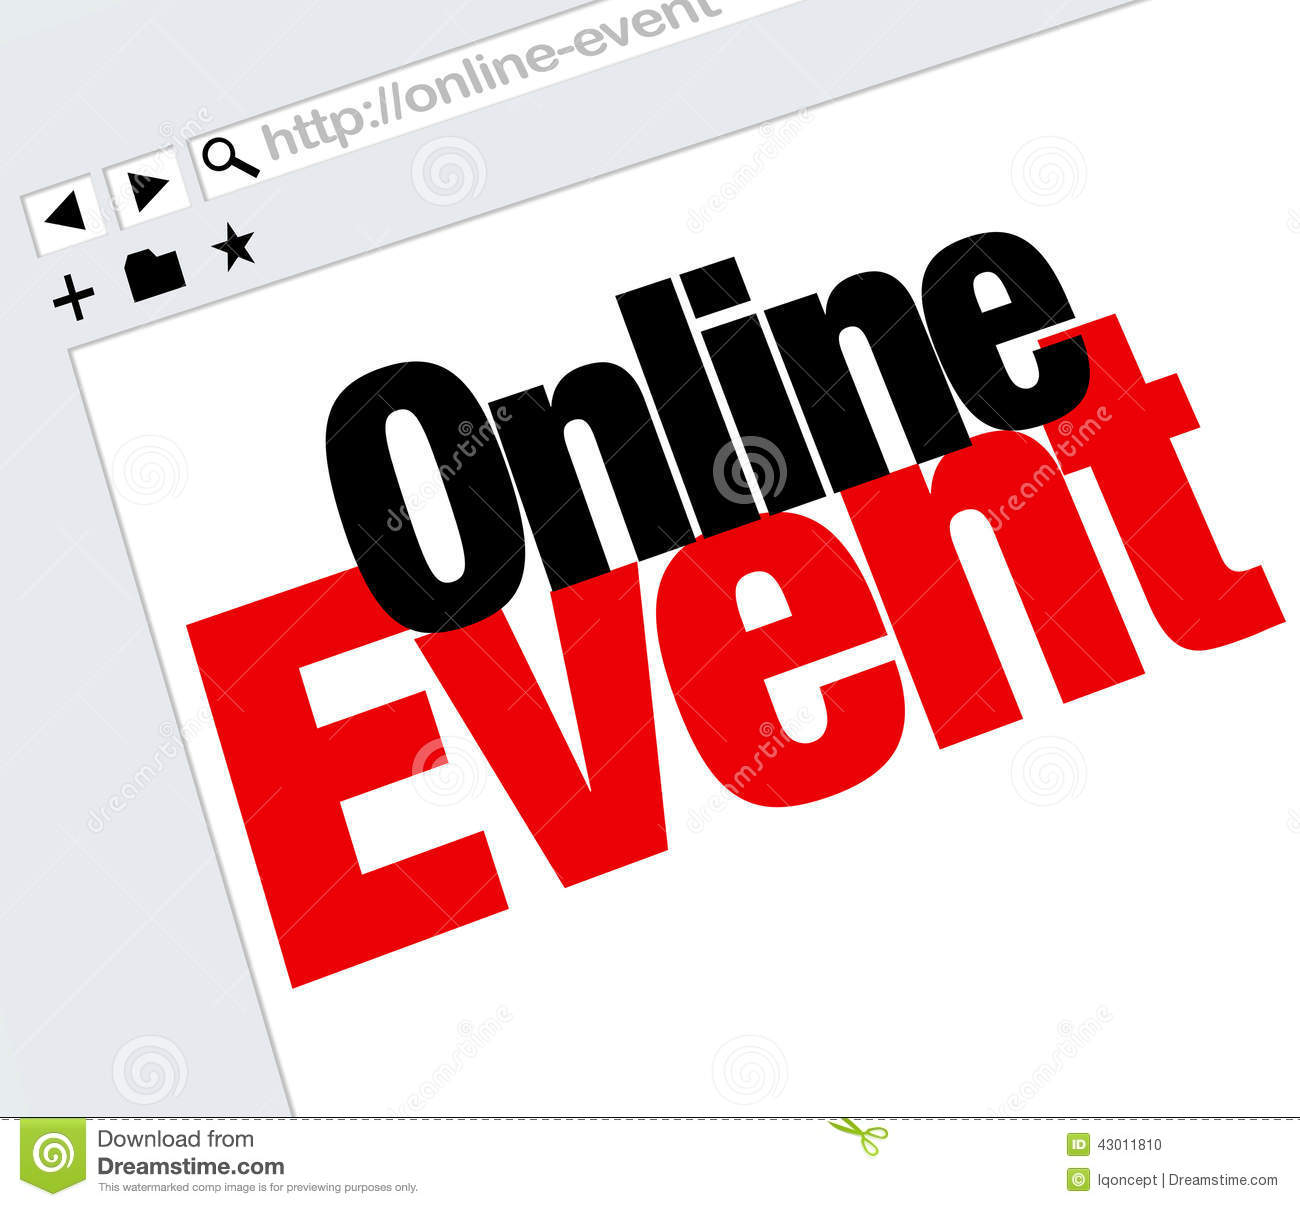 Hosting Online Events